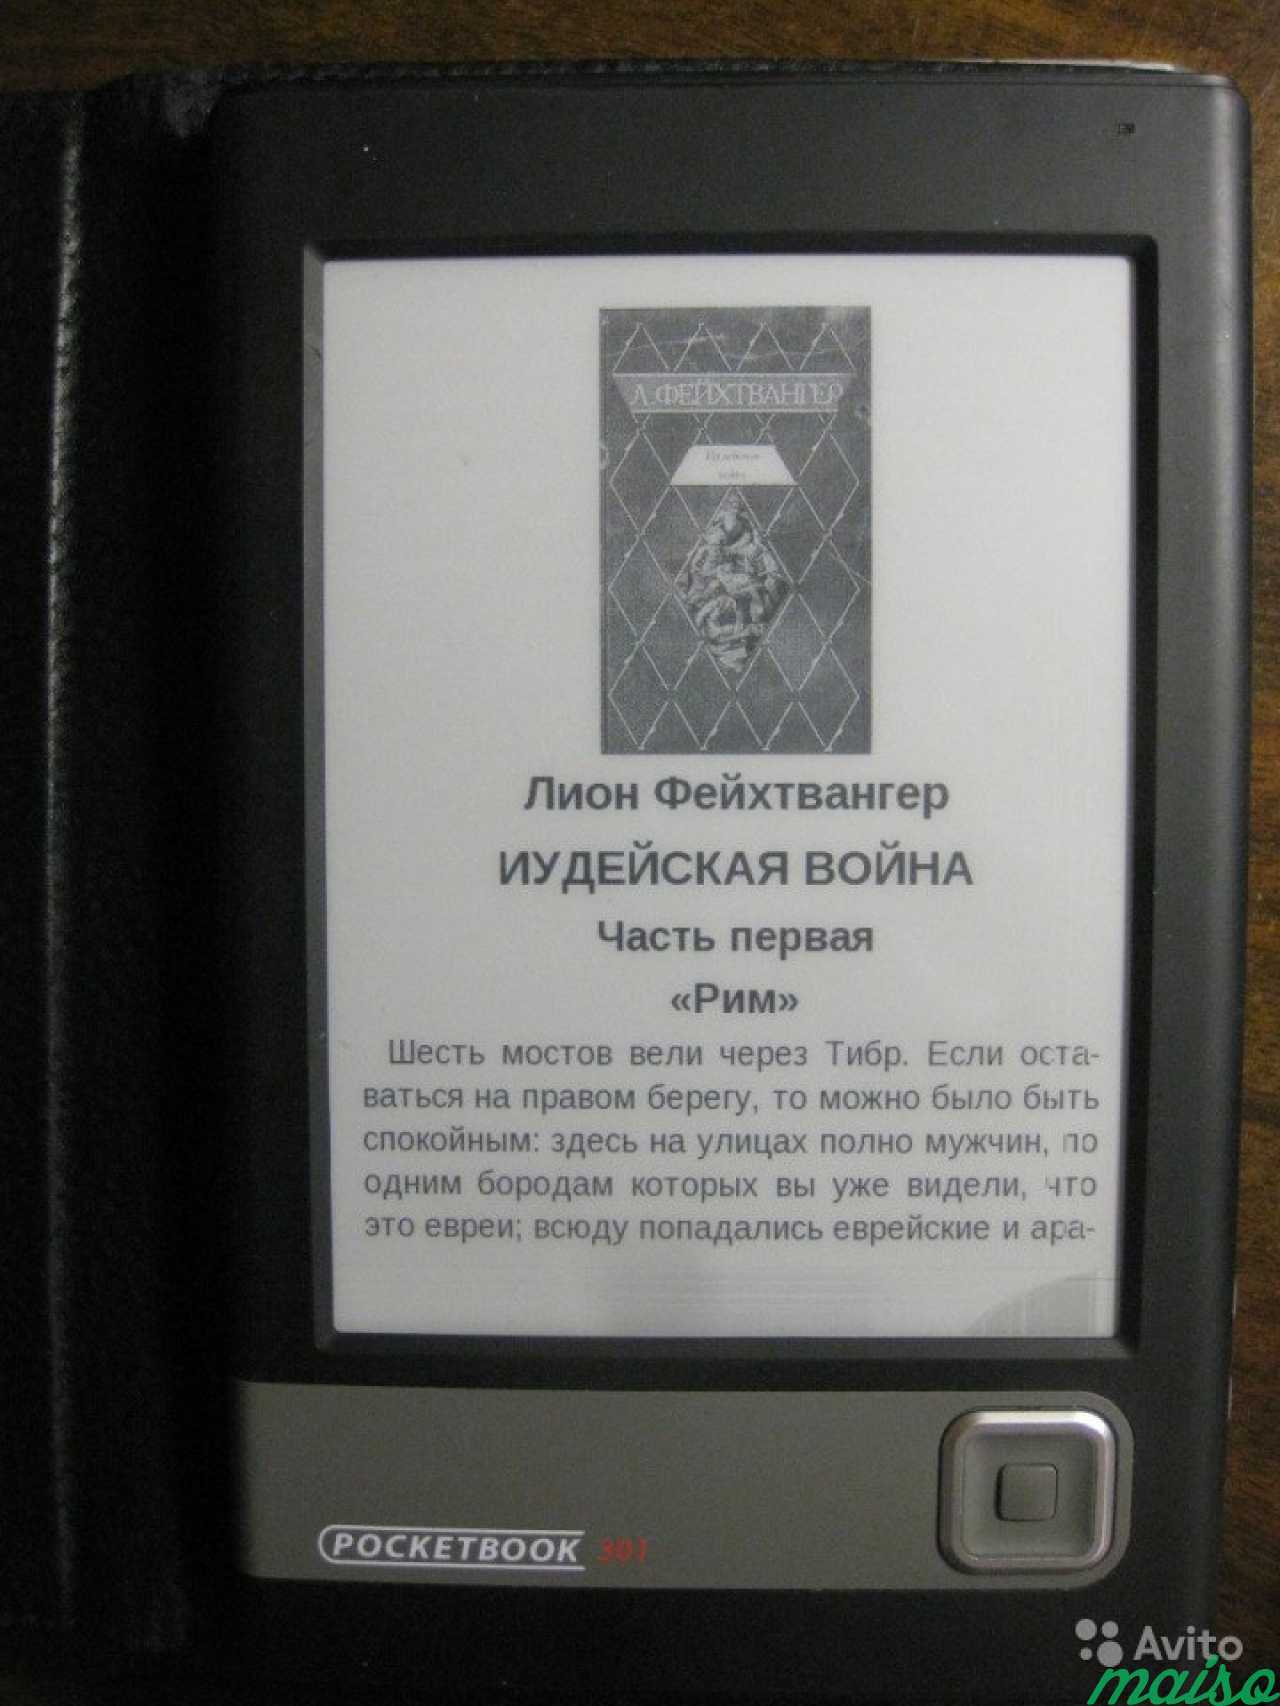 Pocketbook 301+ в Санкт-Петербурге. Фото 2